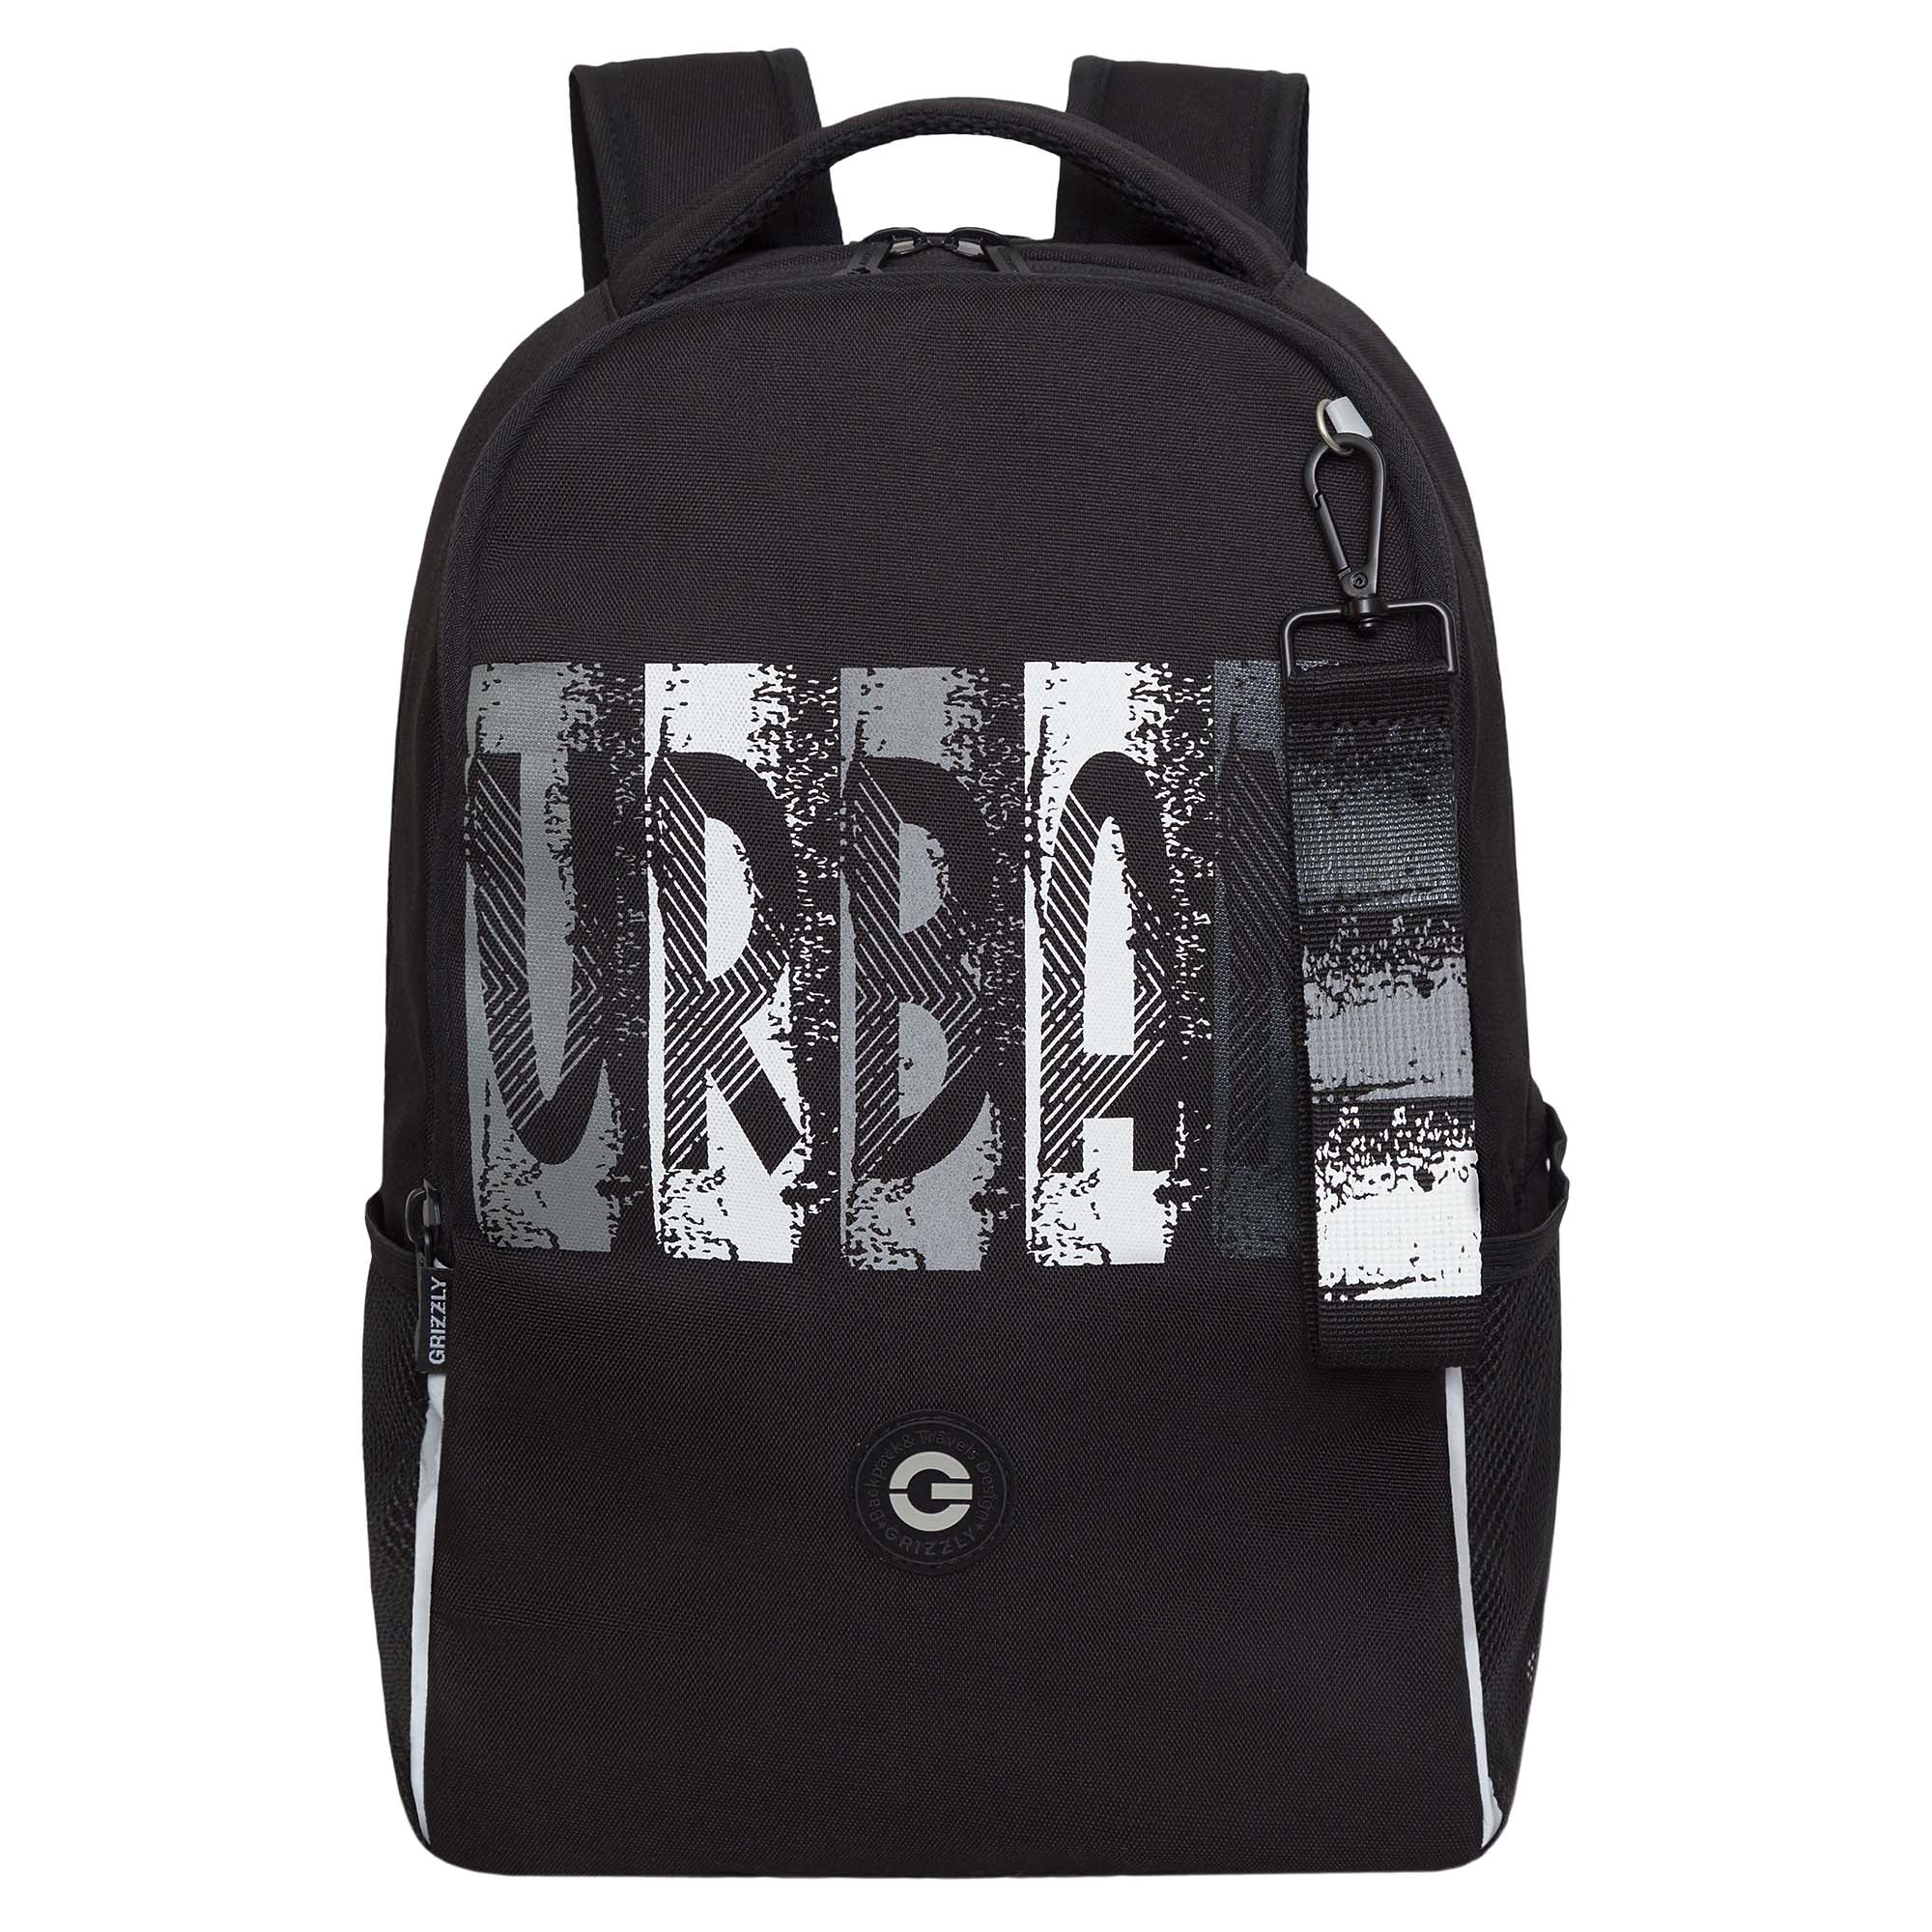 Рюкзак школьный GRIZZLY легкий с жесткой спинкой, 2 отделения, черный; серый, RB-451-3/2 рюкзак для ноутбука xiaomi commuter backpack bhr4903gl до 15 6 2 отделения 21л т серый